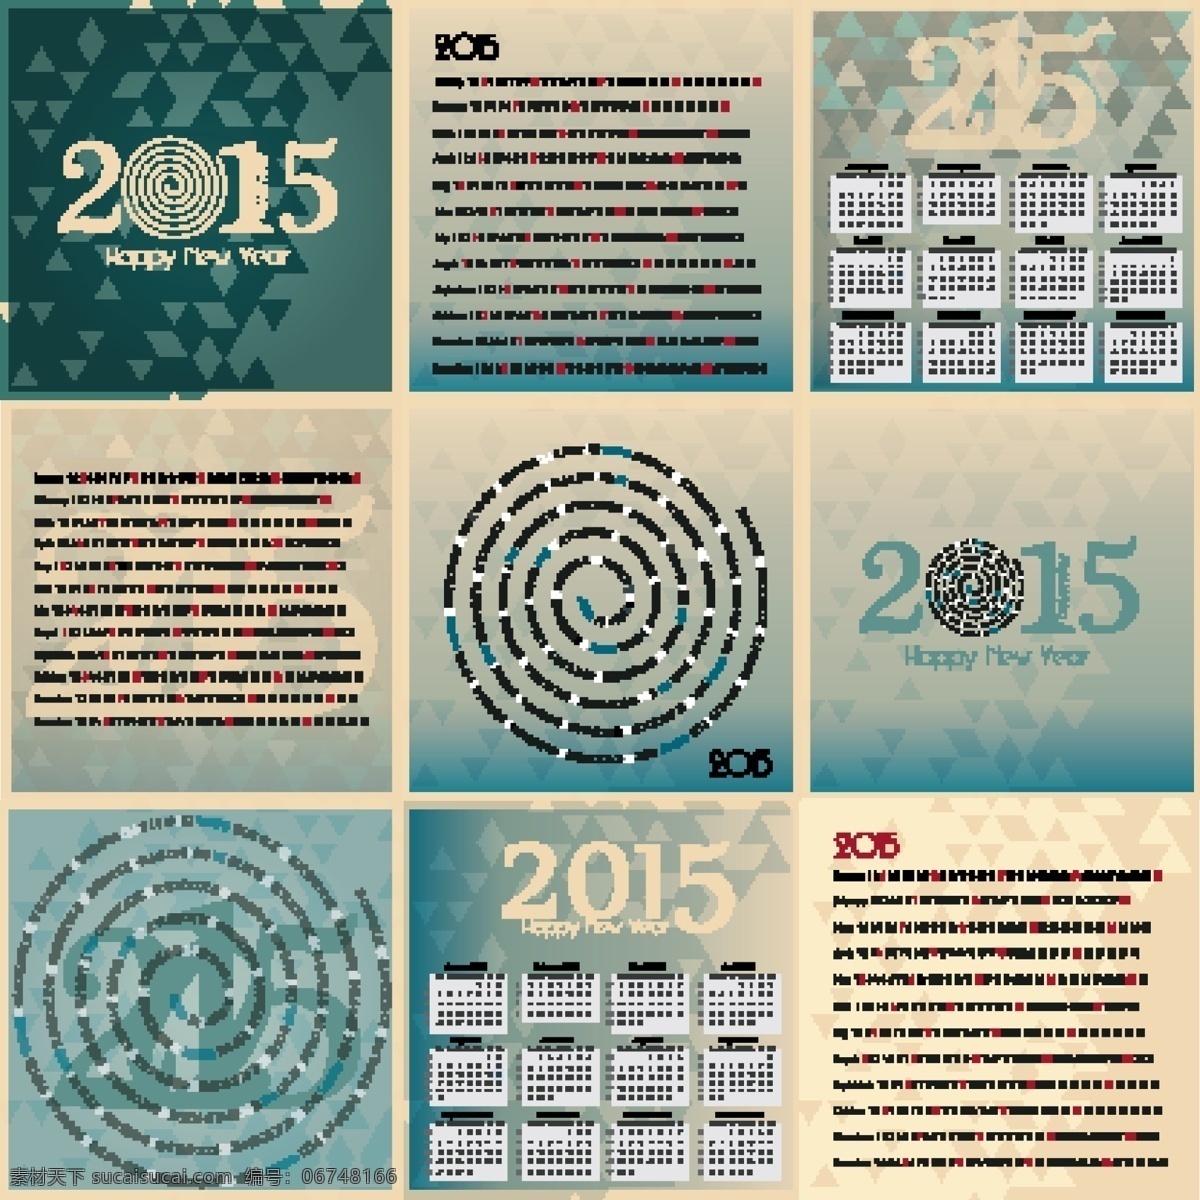 2015 日历 新年 快乐 矢量 日历2015 日历矢量 新年快乐 新的一年 矢量图 其他矢量图